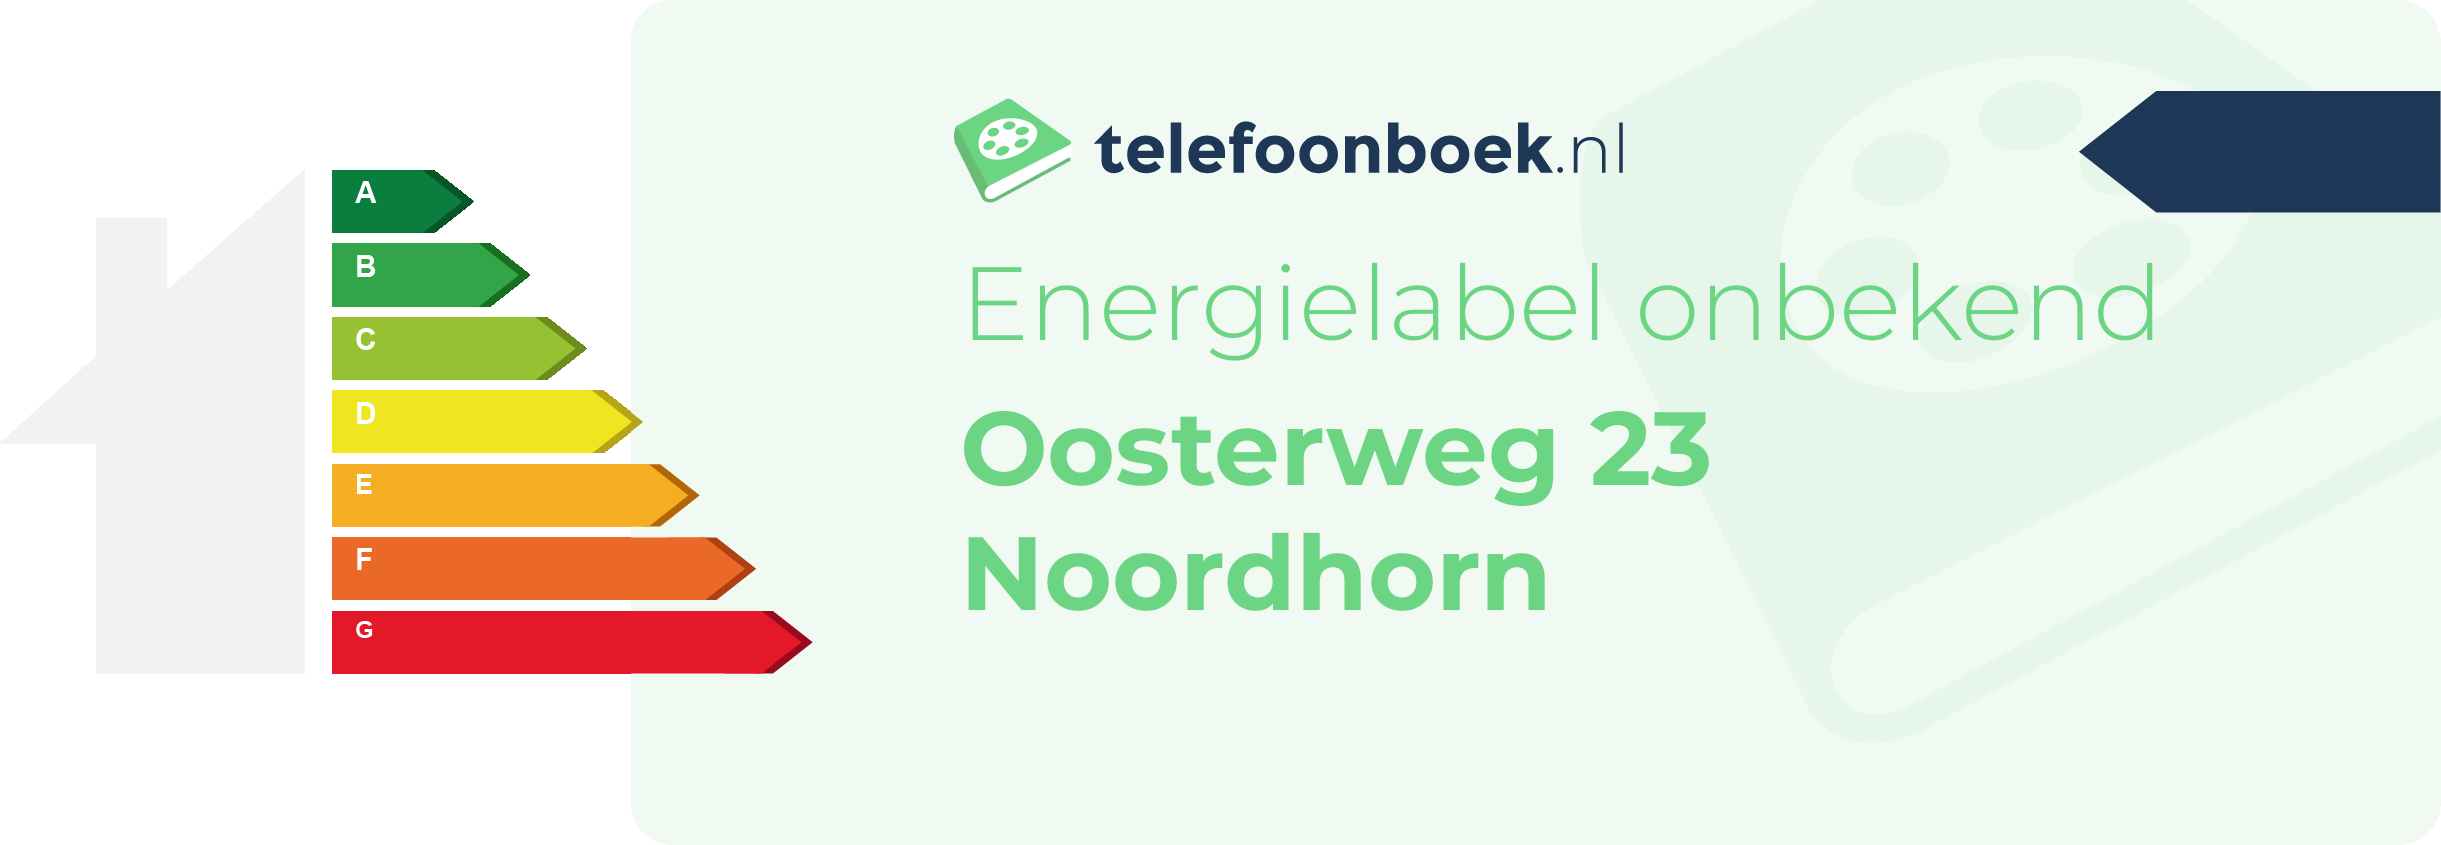 Energielabel Oosterweg 23 Noordhorn